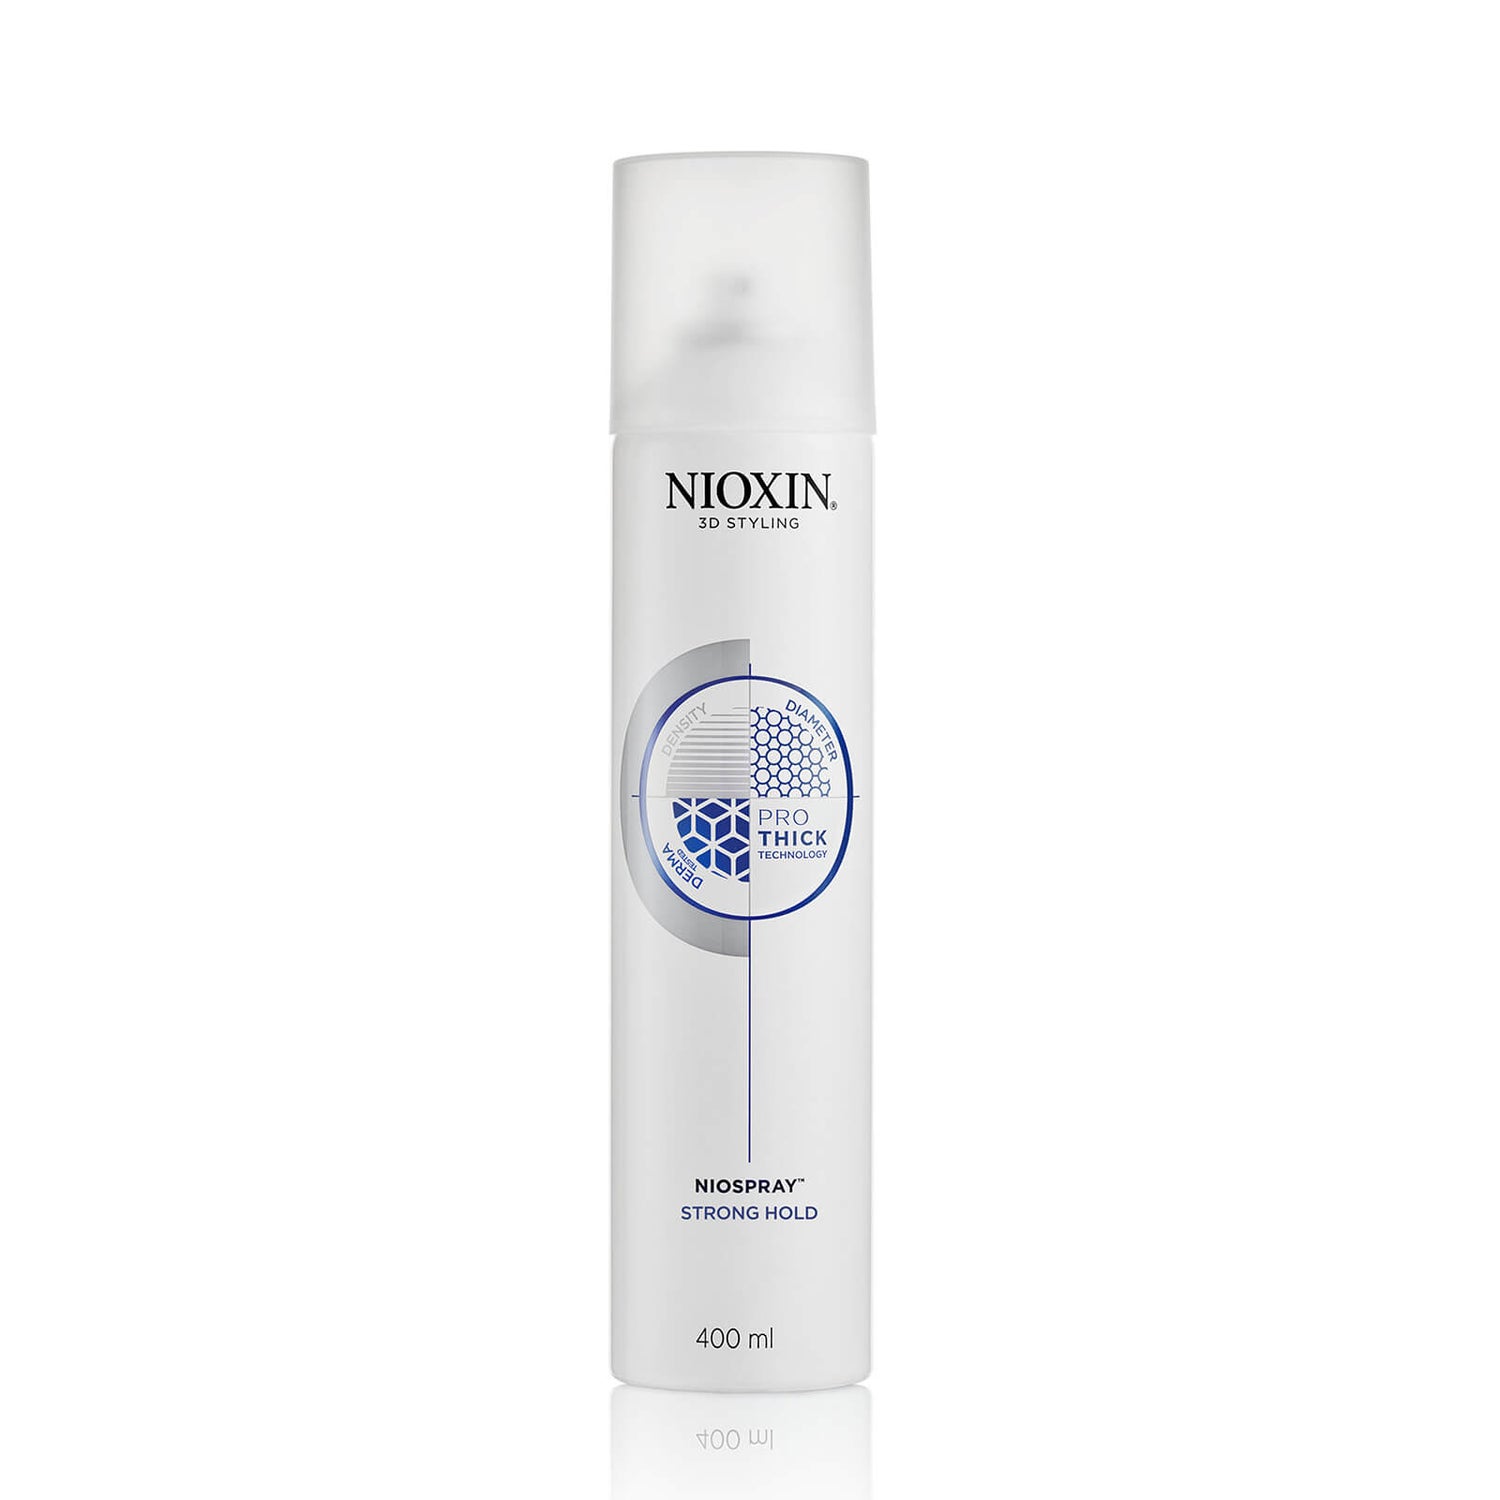 NIOXIN 3D Styling Niospray Strong Hold Hair Spray 400ml